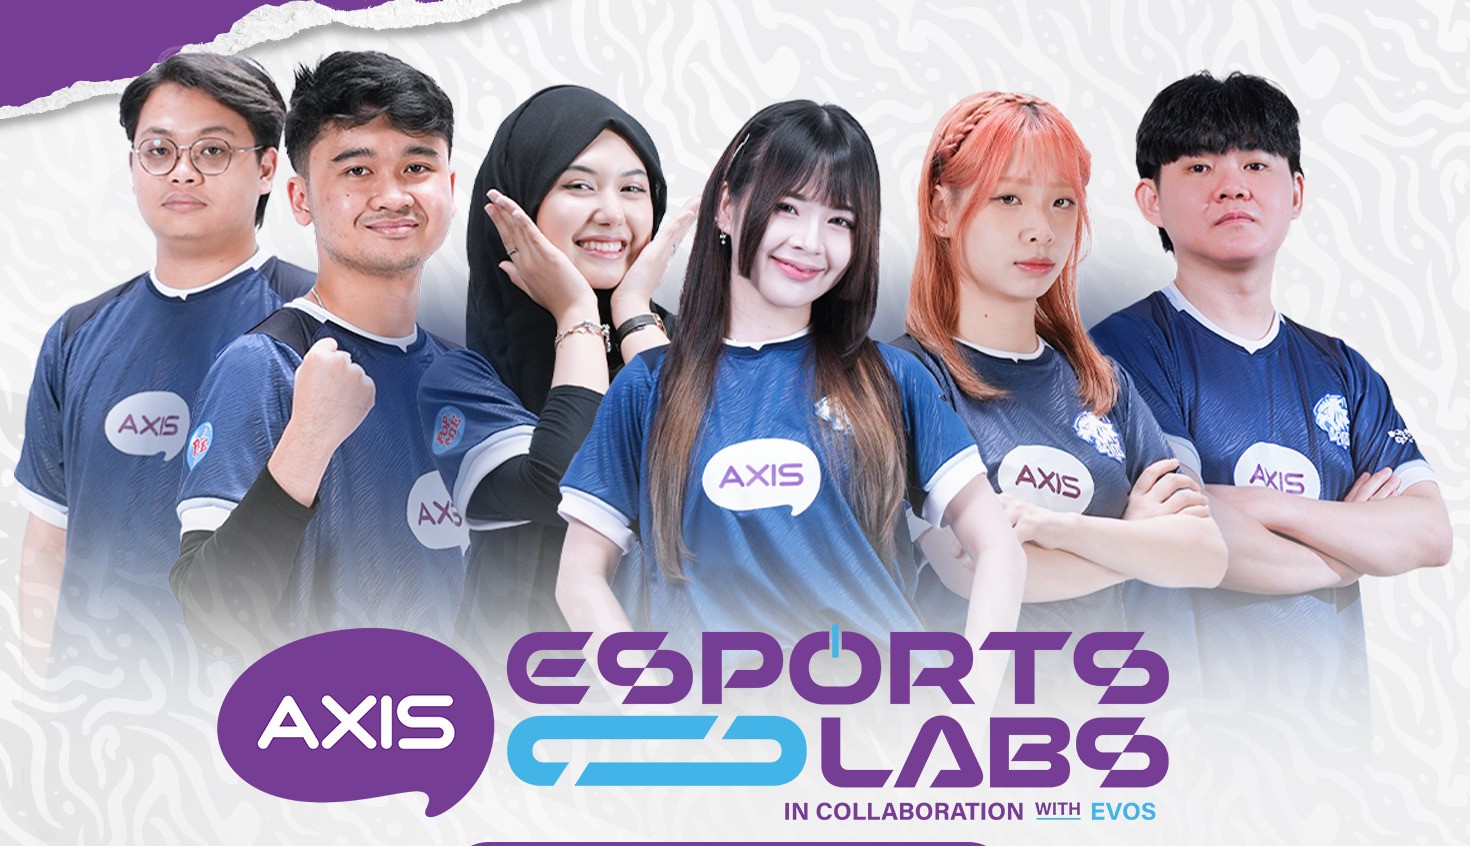 AXIS Esports Labs Menggairahkan Dunia Gaming di Surabaya Bersama EVOS!